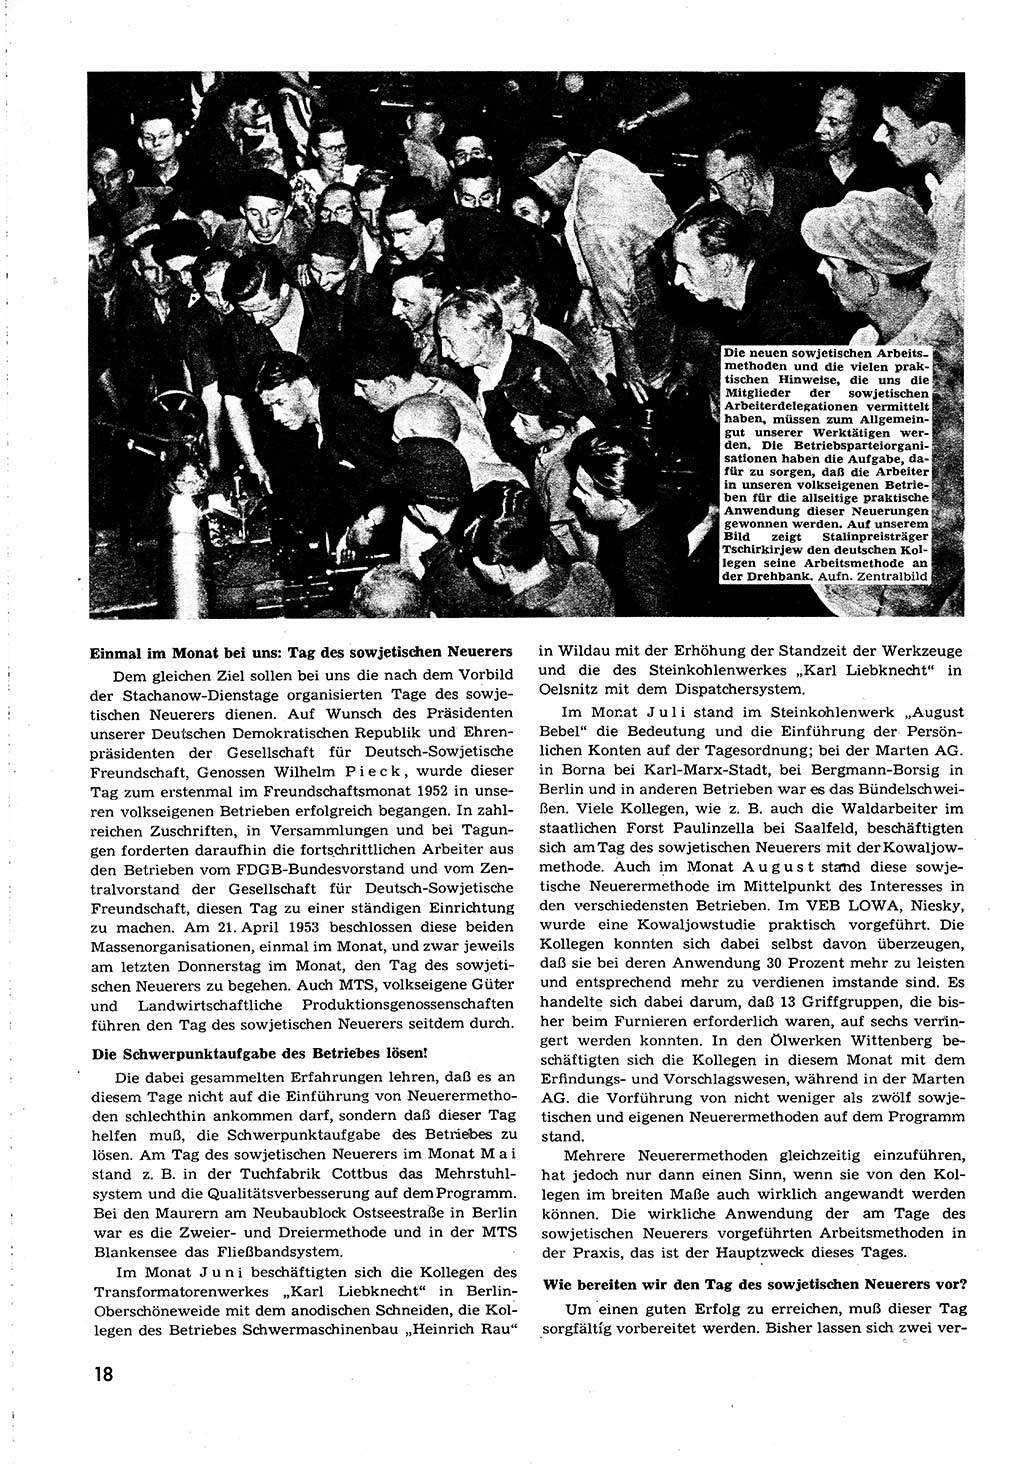 Neuer Weg (NW), Organ des Zentralkomitees (ZK) [Sozialistische Einheitspartei Deutschlands (SED)] für alle Parteiarbeiter, 8. Jahrgang [Deutsche Demokratische Republik (DDR)] 1953, Heft 19/18 (NW ZK SED DDR 1953, H. 19/18)